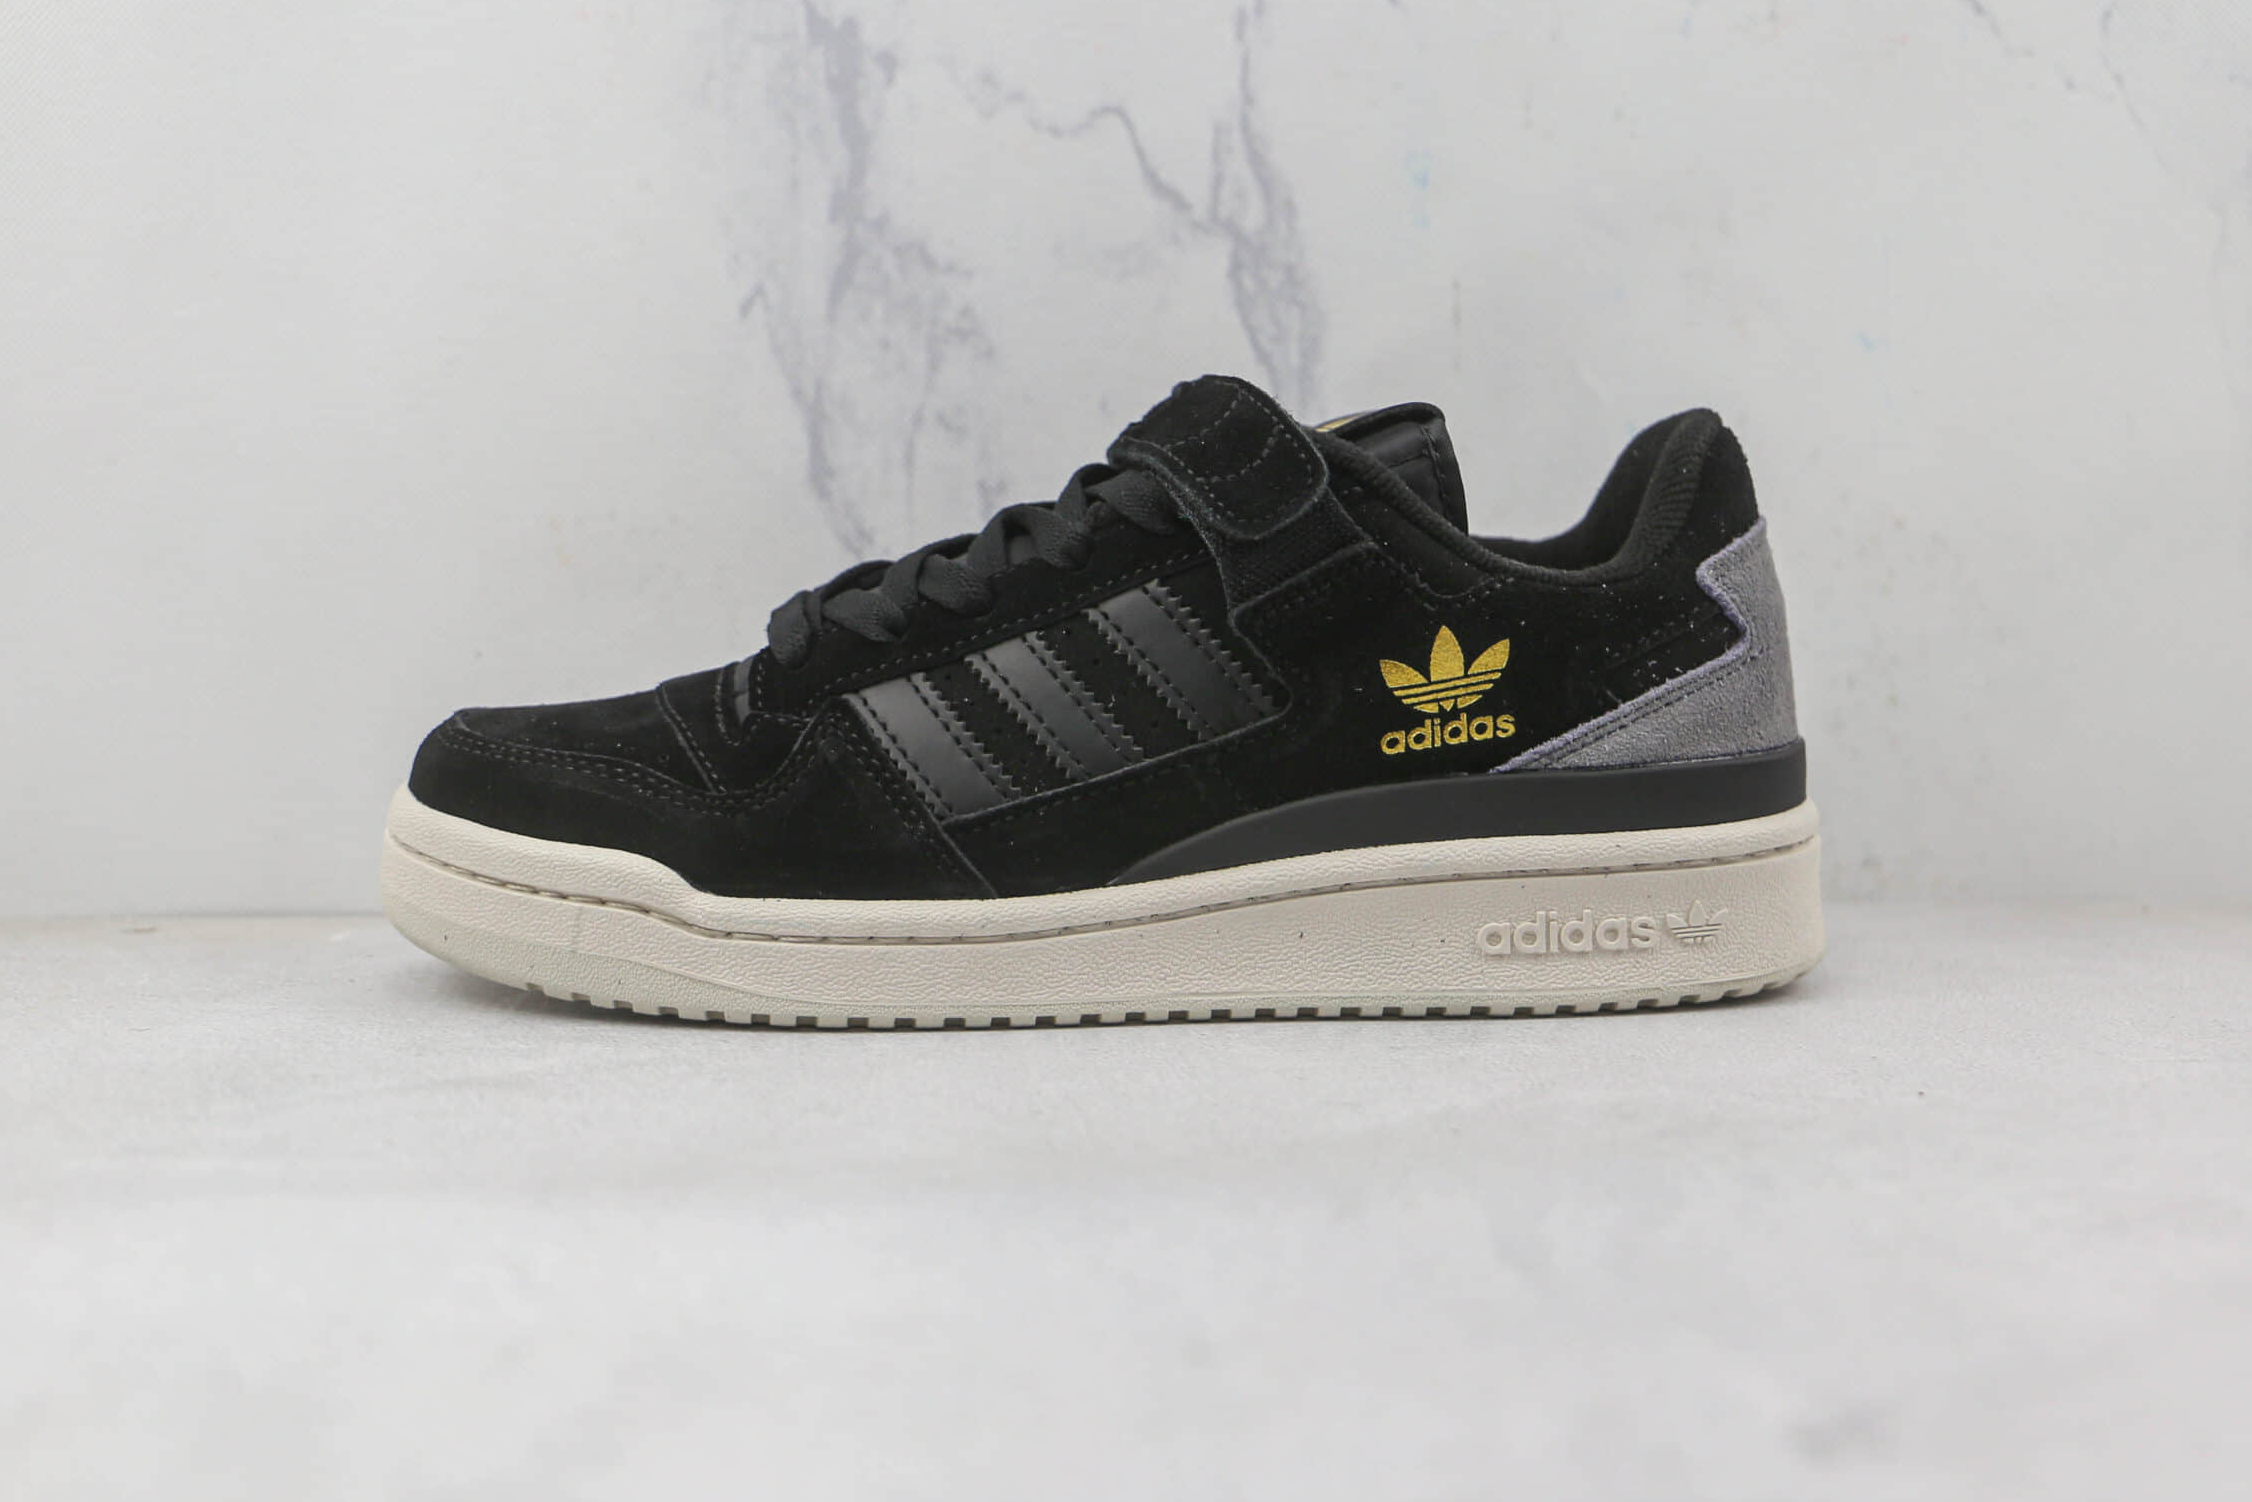 Adidas Forum 84 Low 'Black White' Q46366 - Classic Retro Sneakers